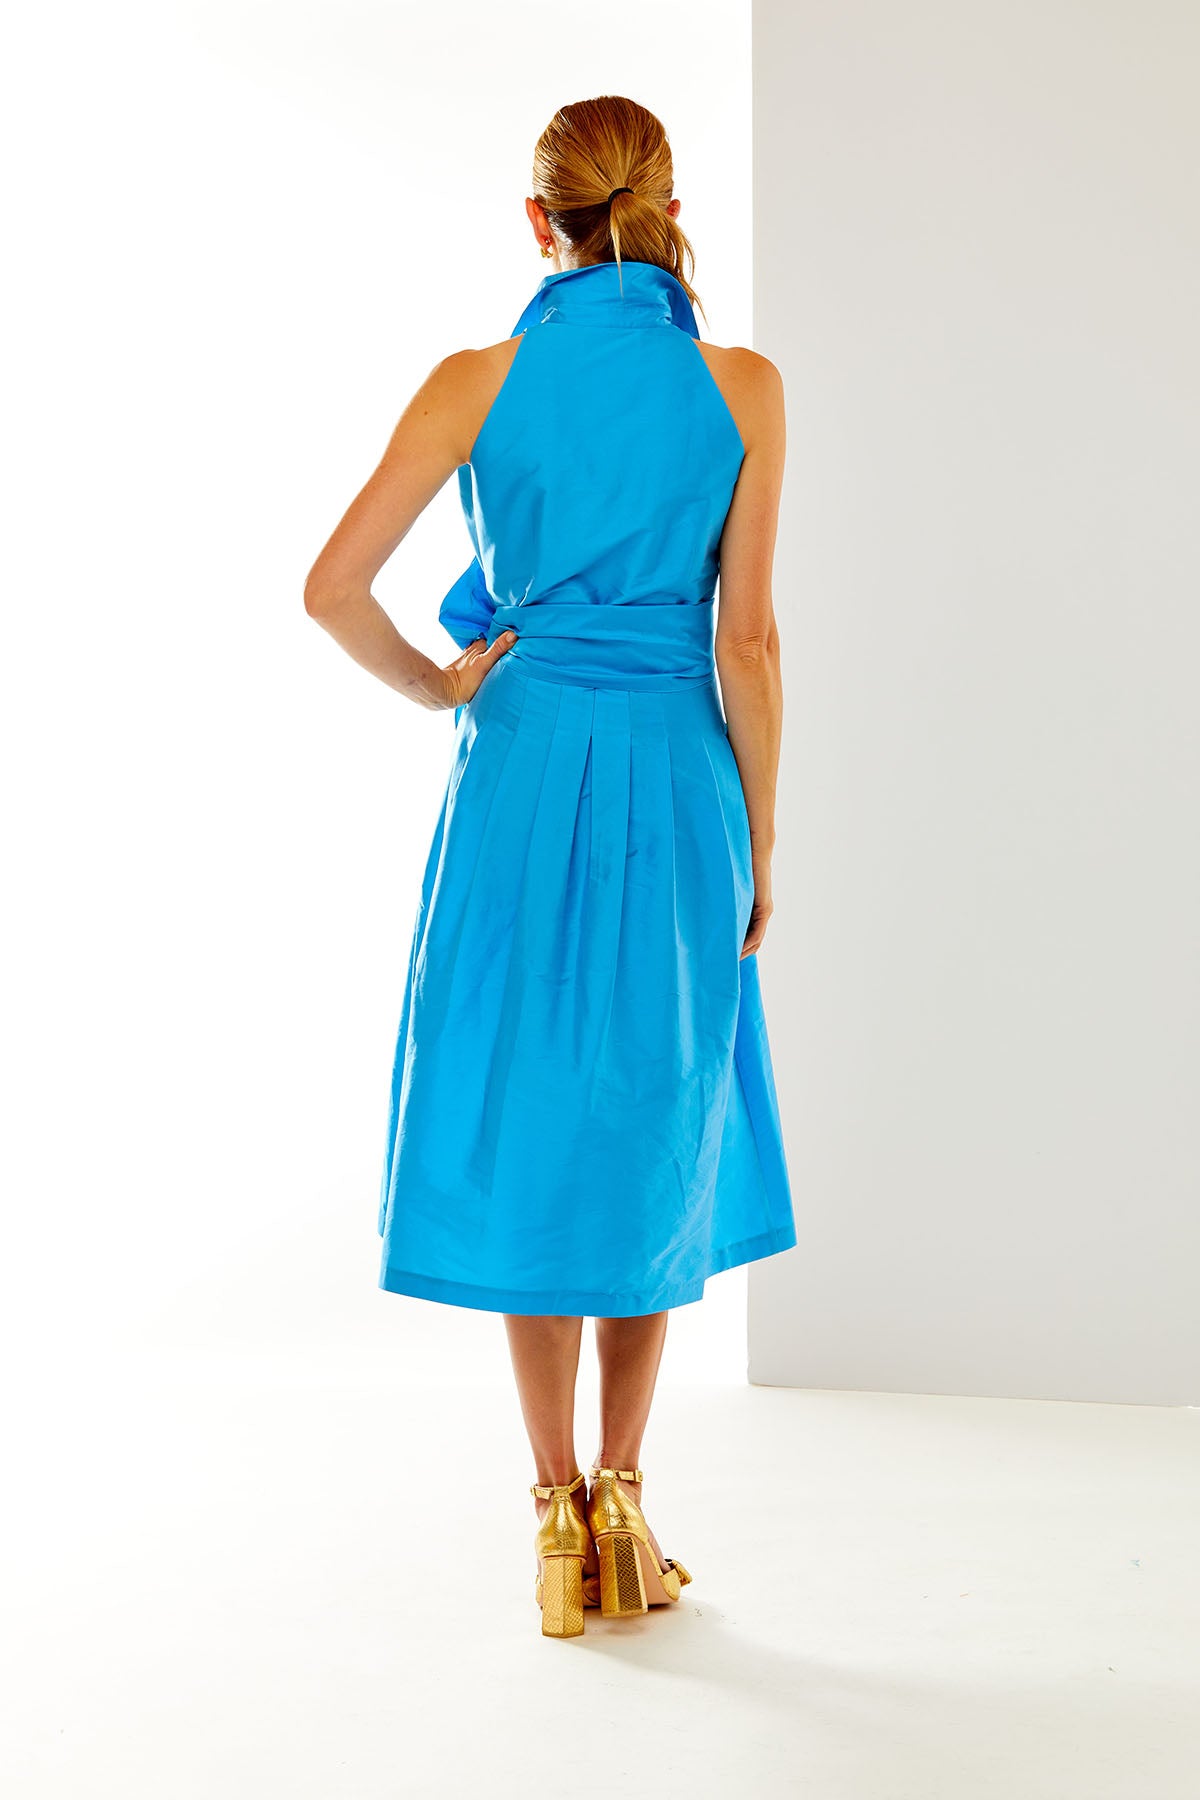 Woman in blue dress 